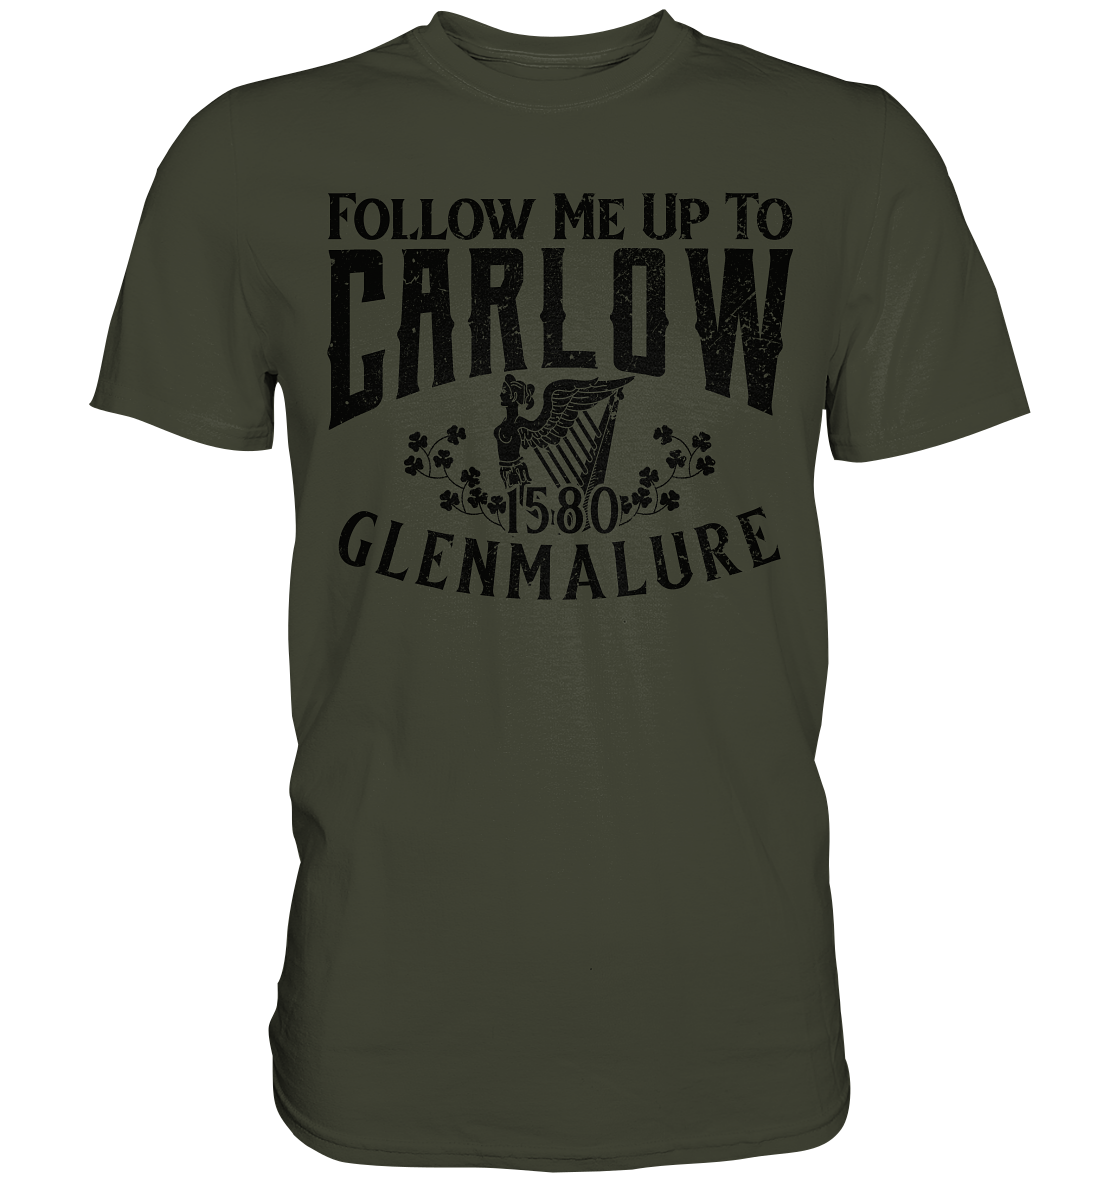 Follow Me Up To Carlow - Premium Shirt